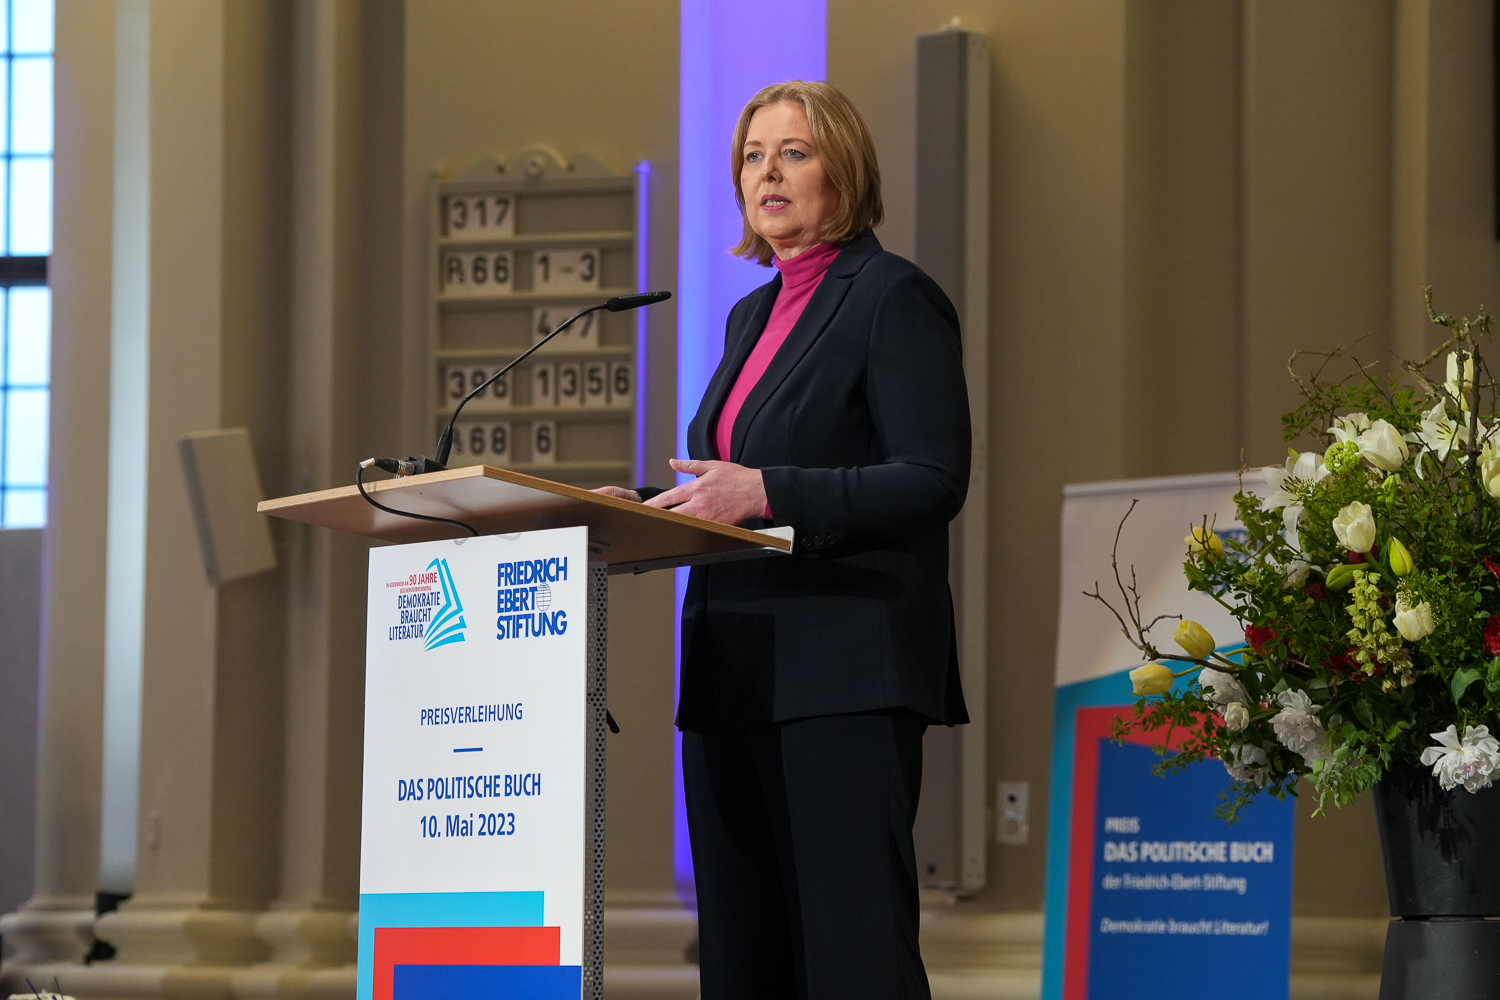 Die Präsidentin des Deutschen Bundestages Bärbel bas steht am Rednerpult und hält ihre Festrede anlässlich der Preisverleihung "Das politische Buch"